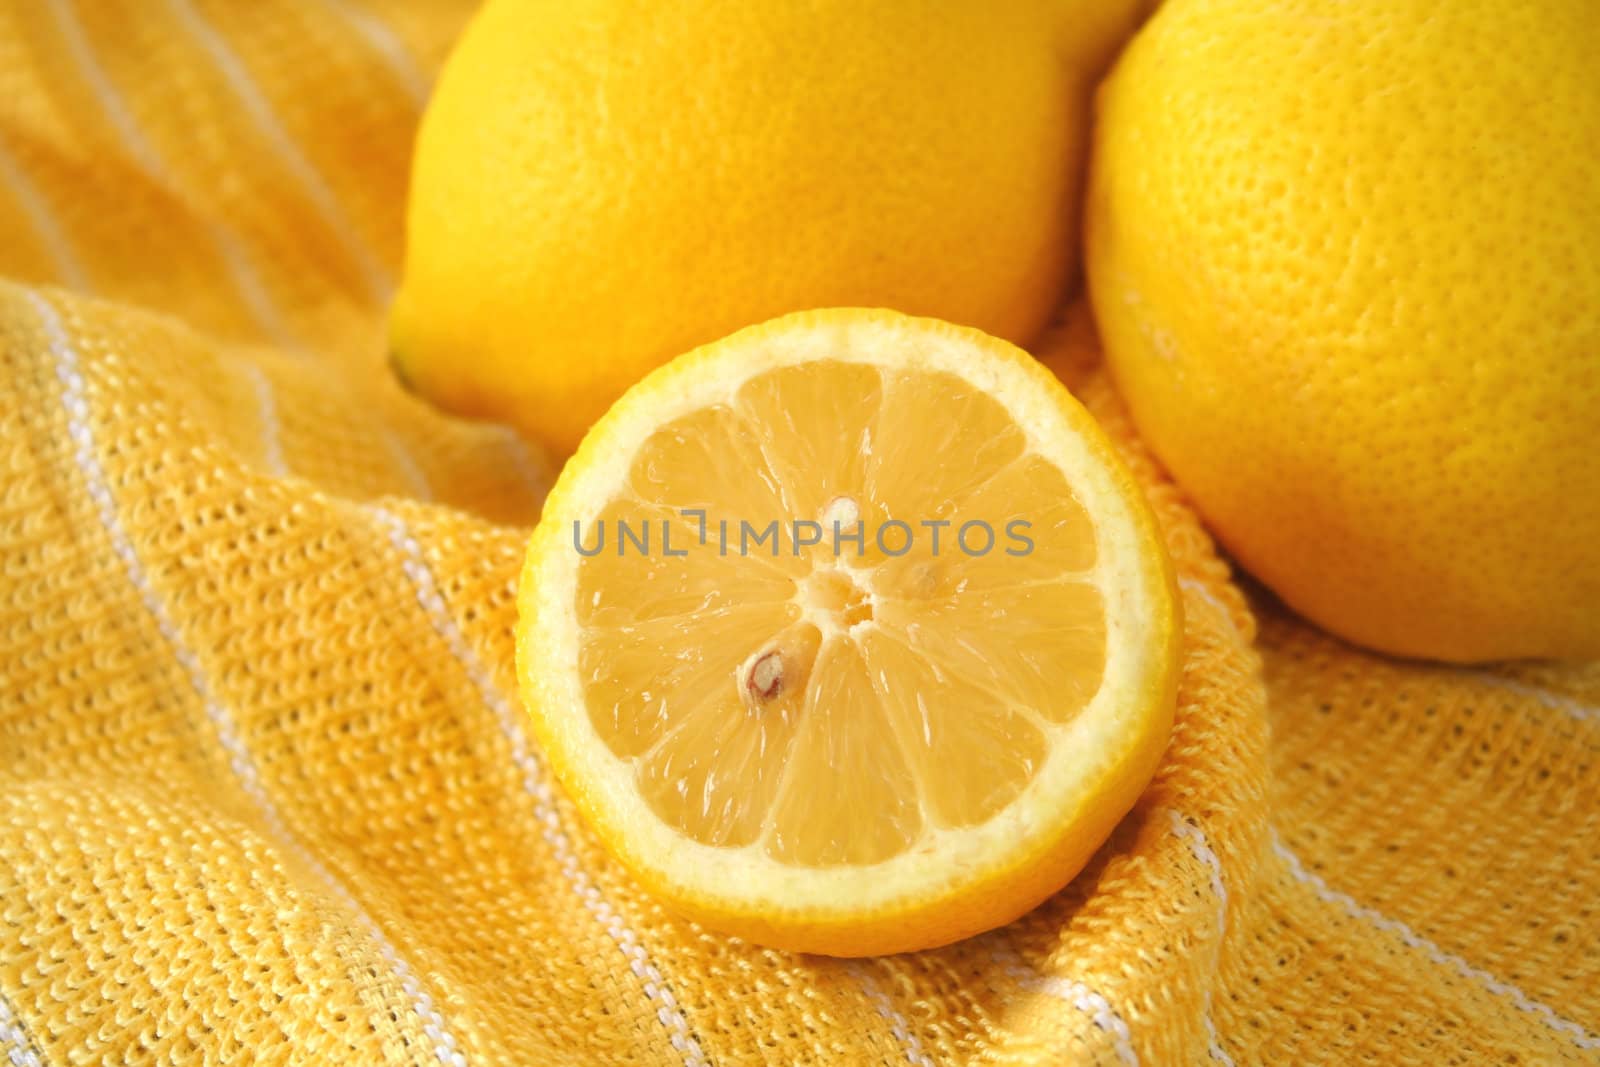 Lemons by thephotoguy